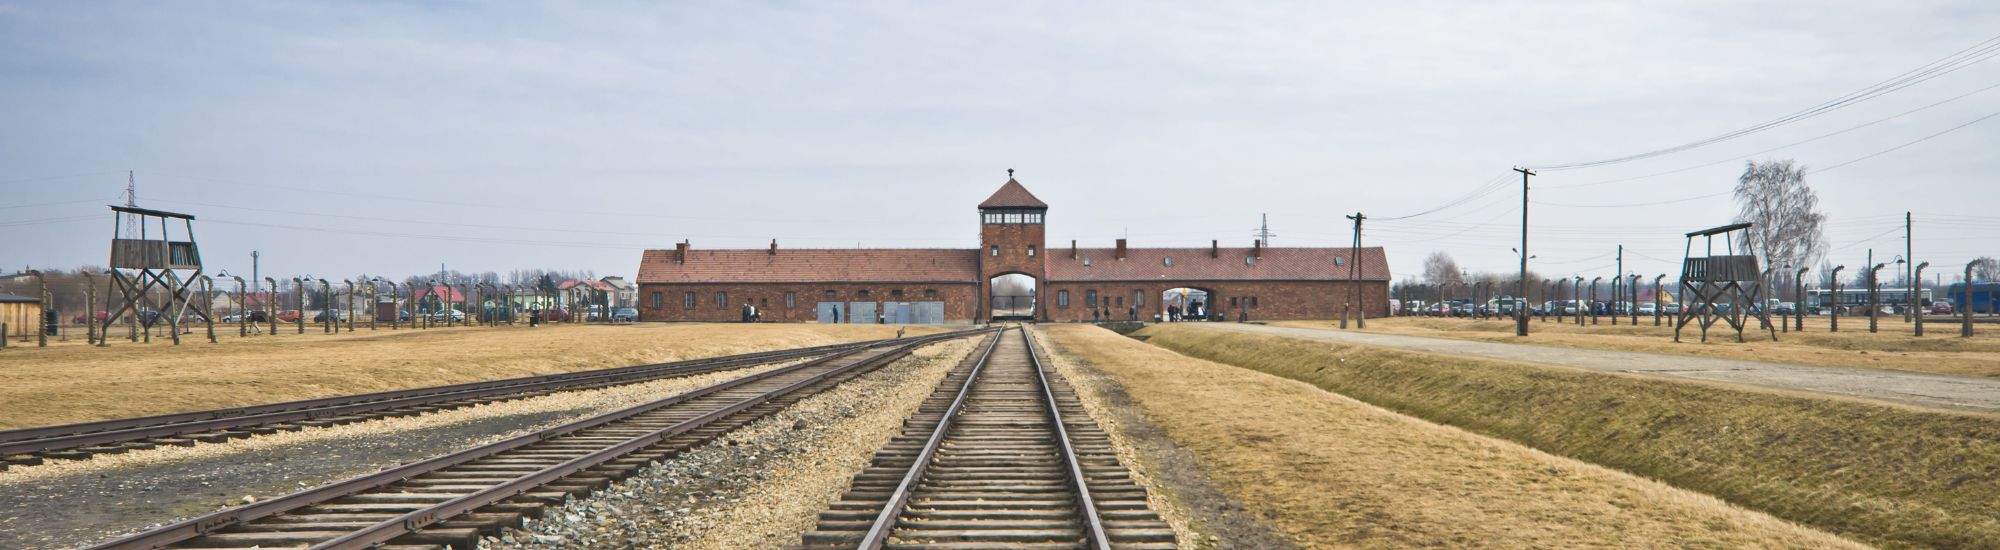 Gli USA sostengono la visita virtuale ad Auschwitz-Birkenau